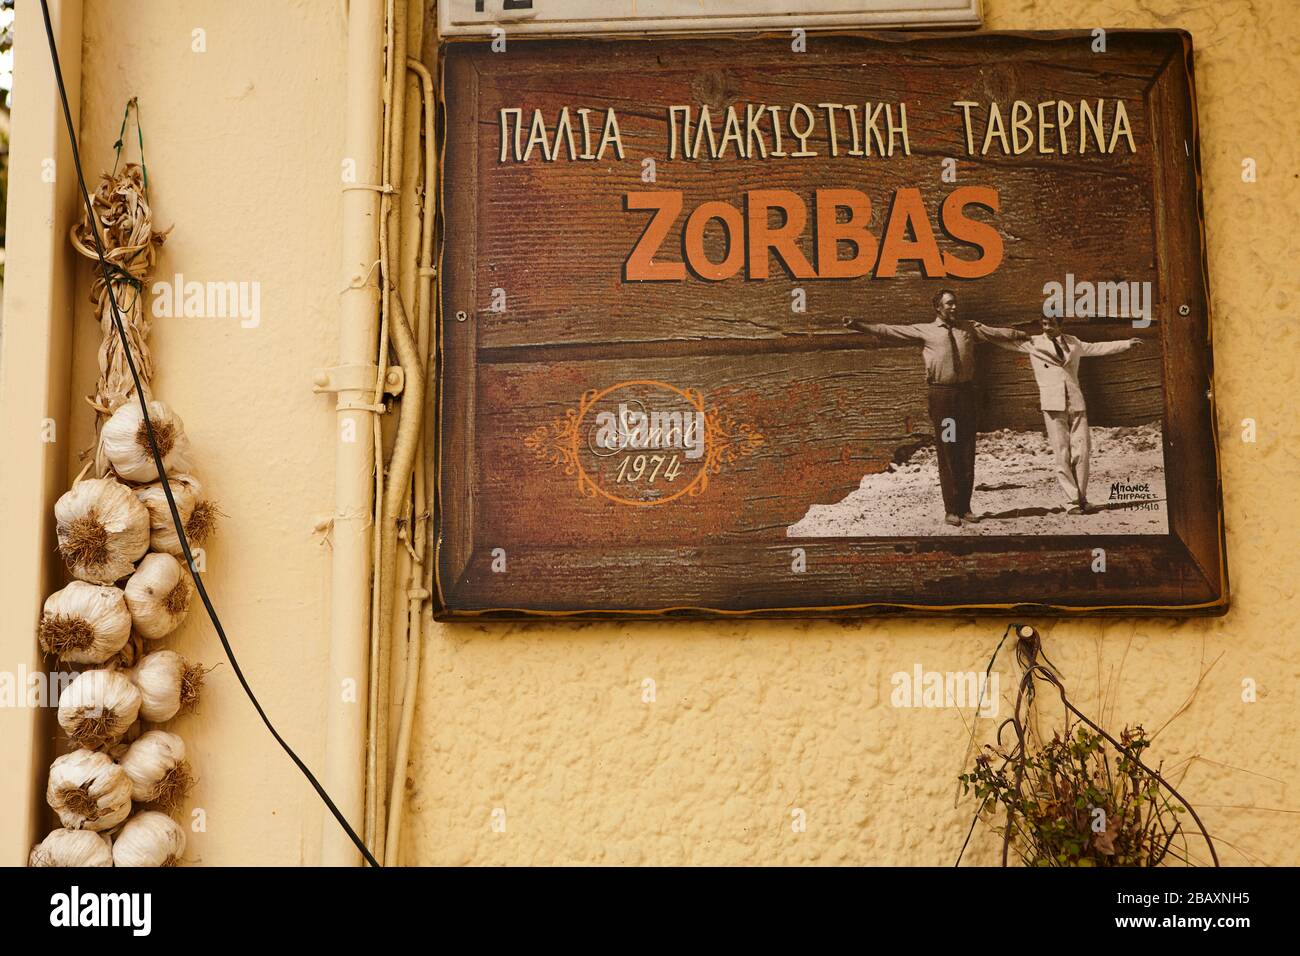 zorbas, taverna sign at plaka Athens greece Stock Photo